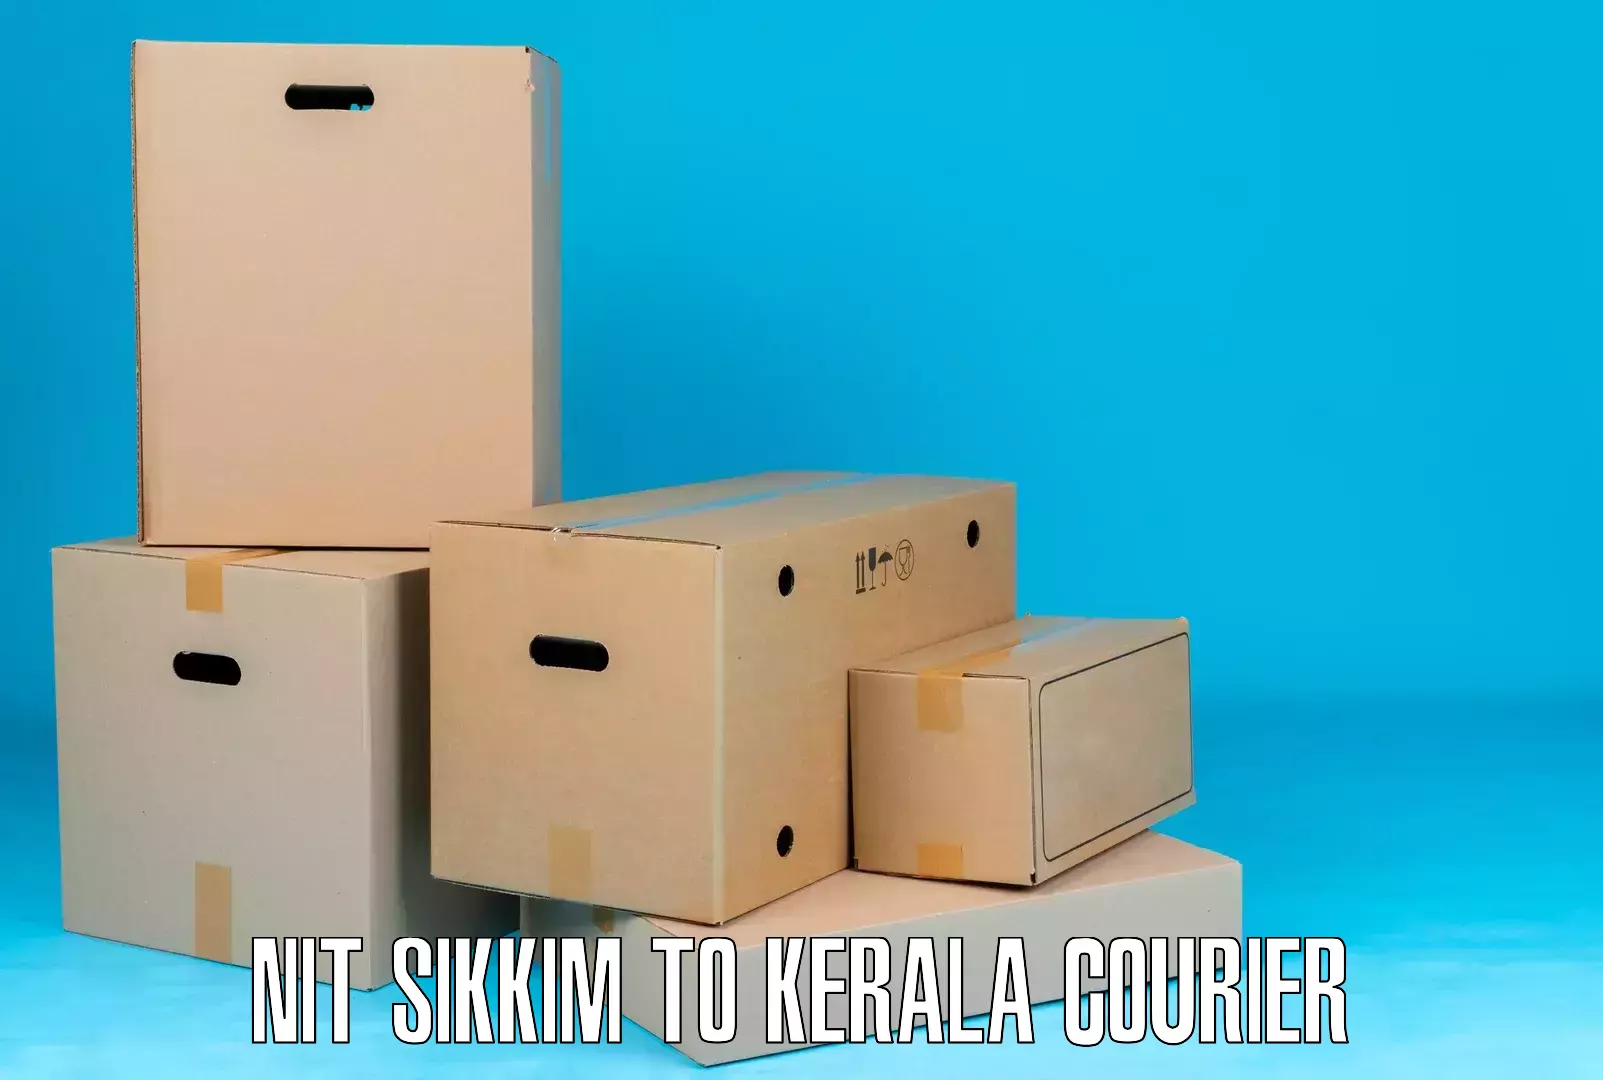 Advanced shipping technology NIT Sikkim to Kerala